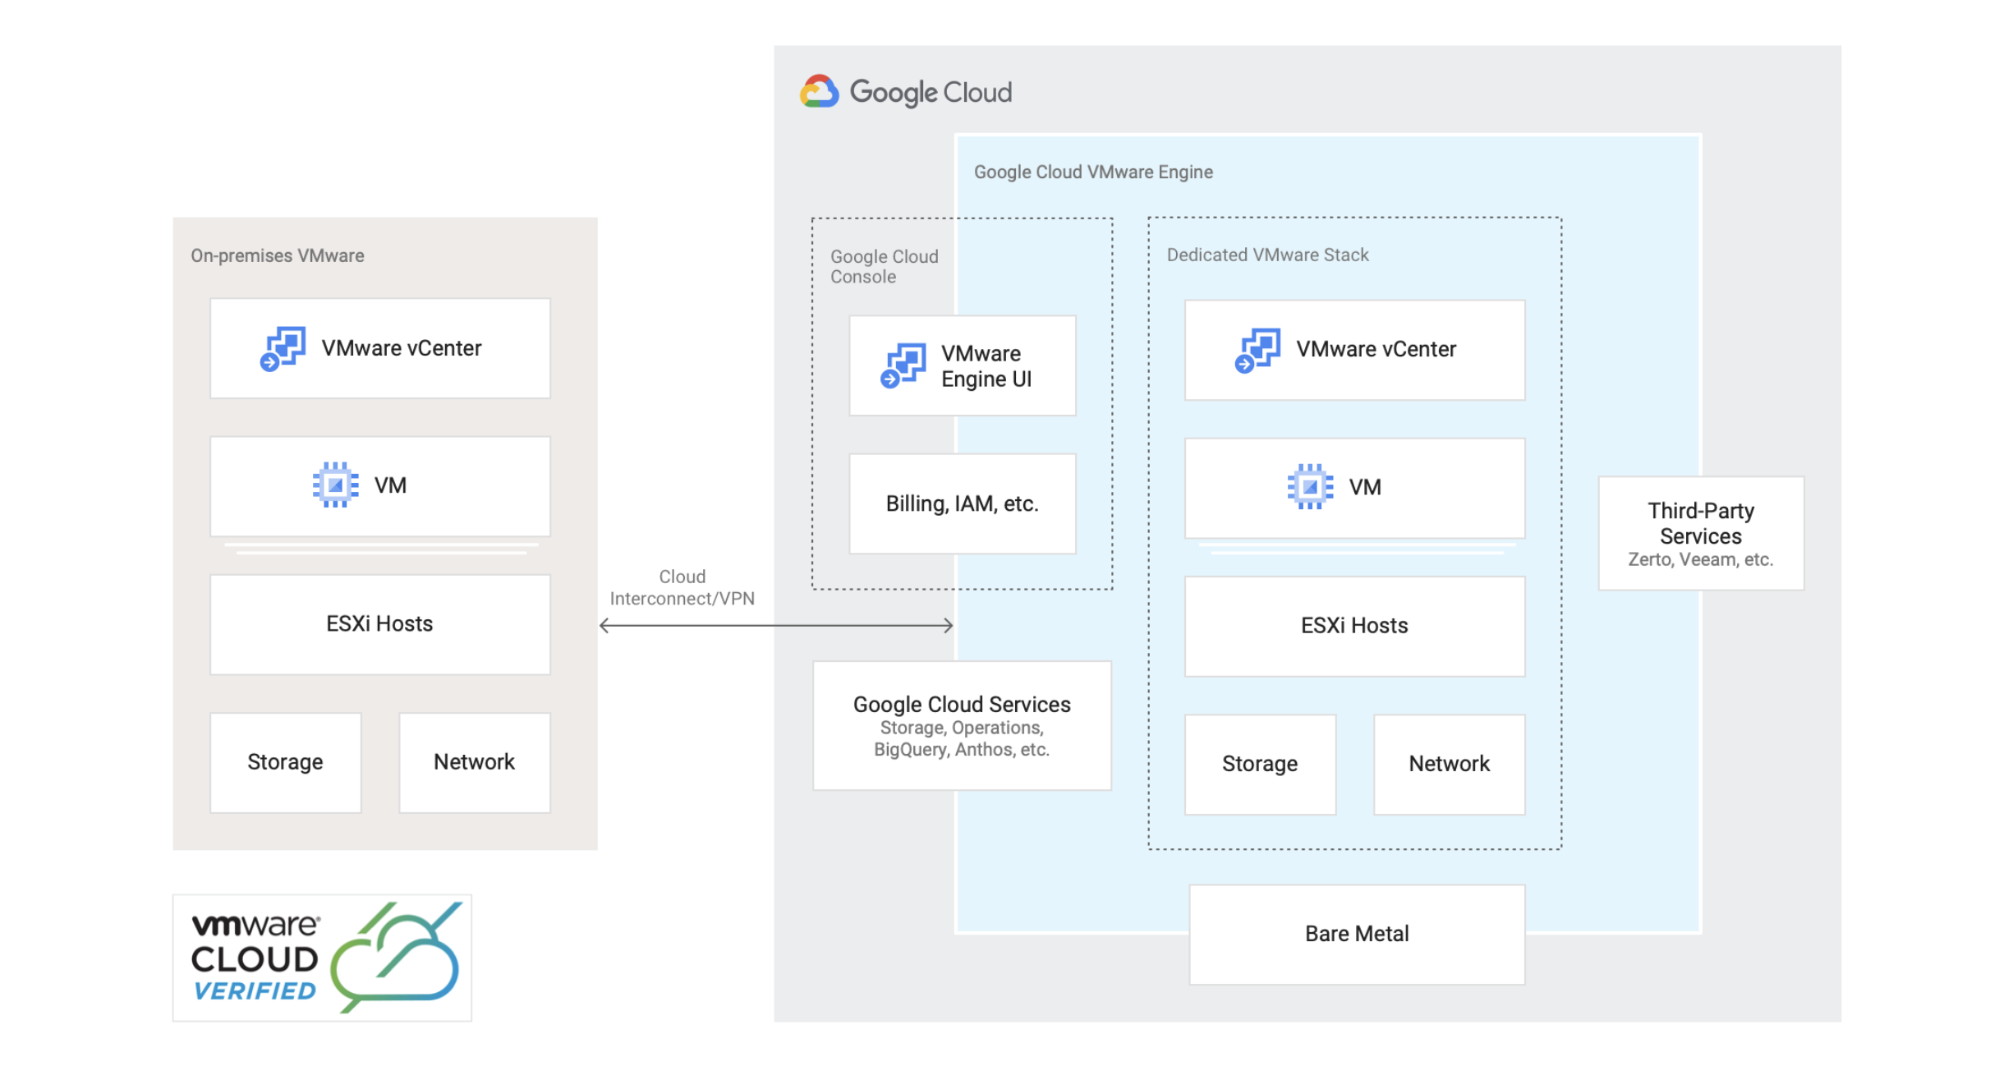 展示如何将 VMware 环境迁移或扩展到 Google Cloud 的参考架构。